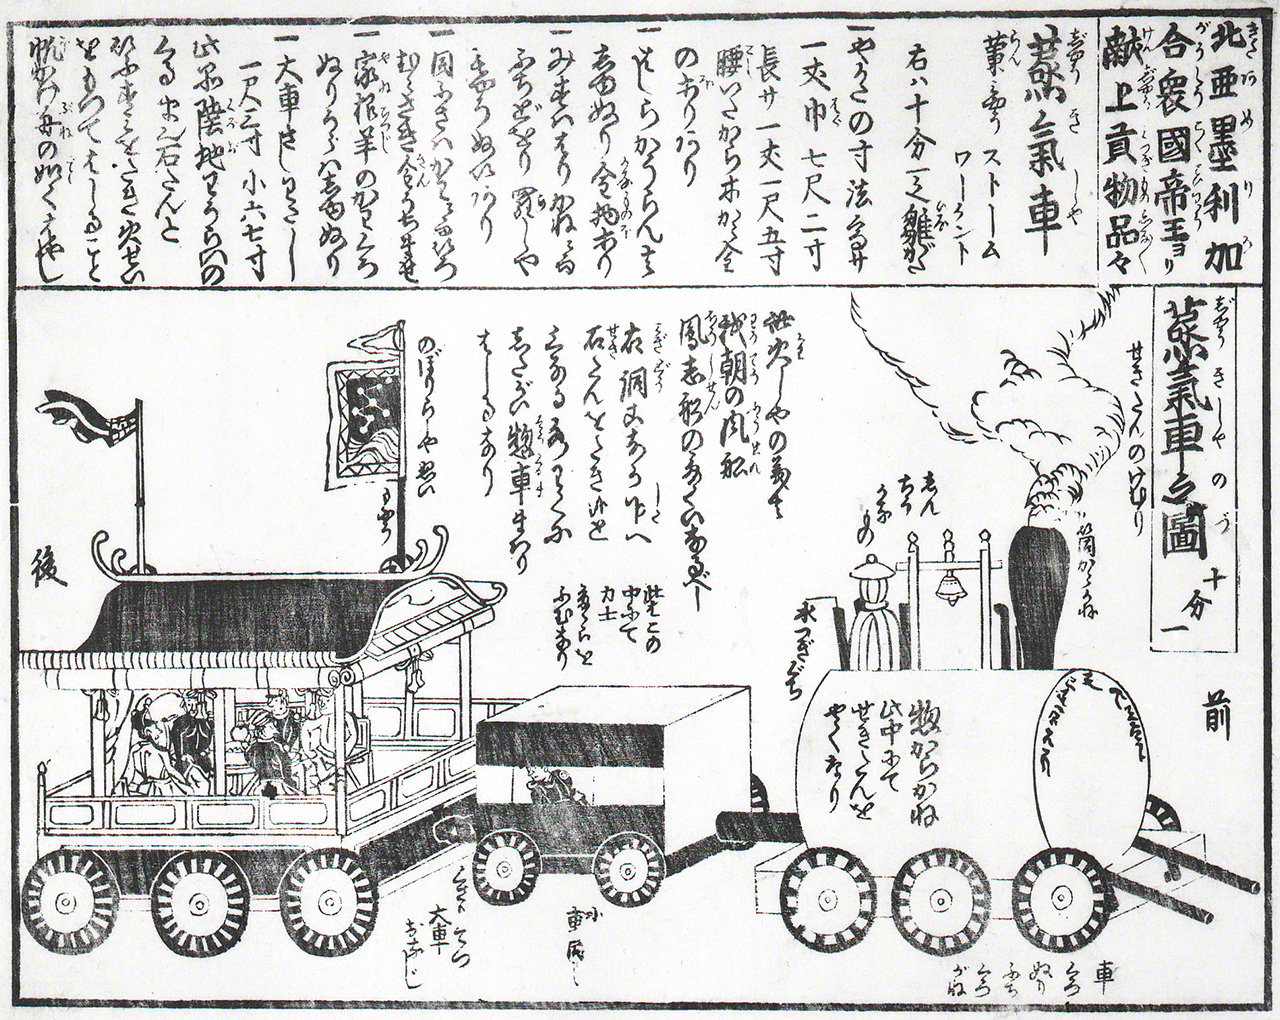 إحدى مطبوعات كواربان (المطبوعات الخشبية) في تقريرها عن القاطرة البخارية المهداة. (من سجلات المحفوظات التاريخية لمدينة يوكوهاما)